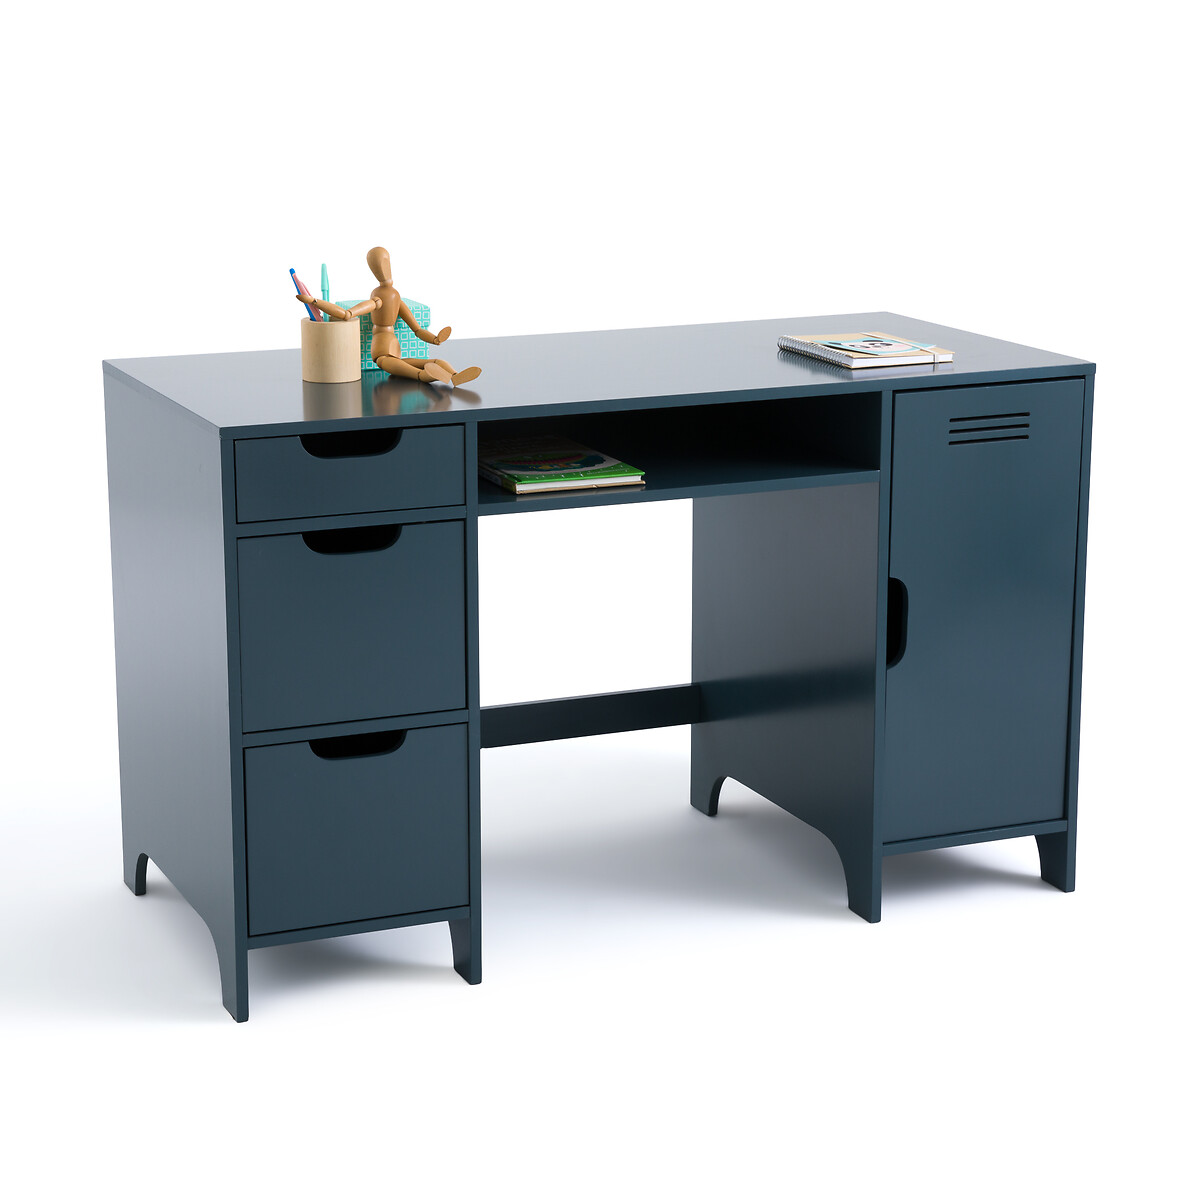 Asper Child’s Desk with Double Cabinets